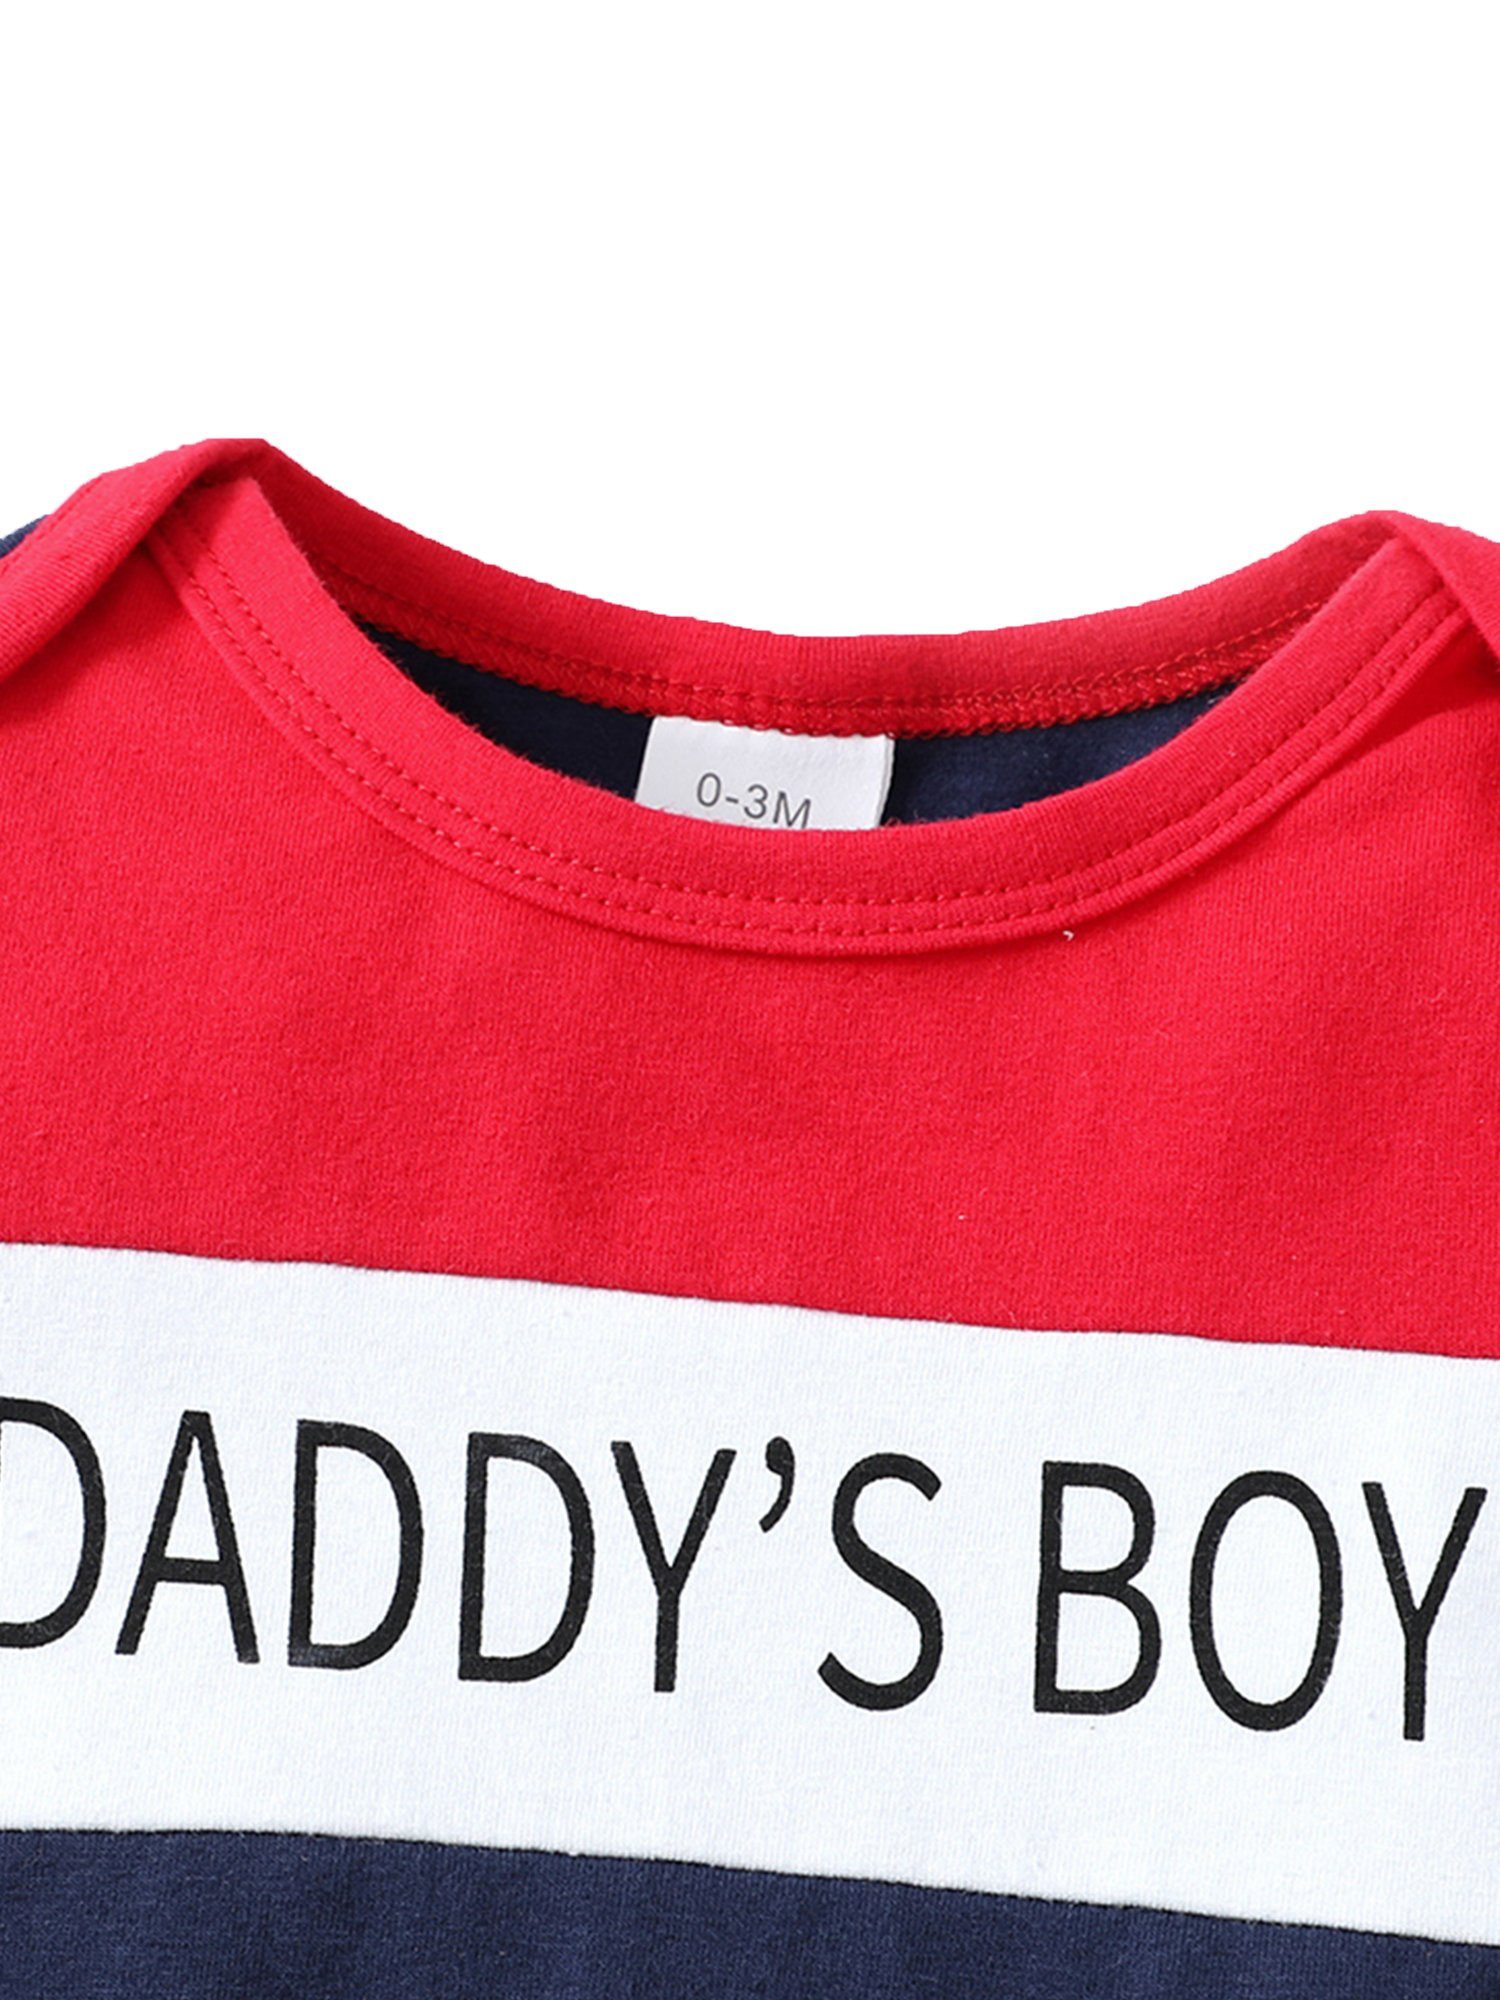 Kinder Jungen (Gr. 50 - 92) LAPA Shirt & Shorts Baby Jungen Lässig 2-teiliges Set, Top und Shorts